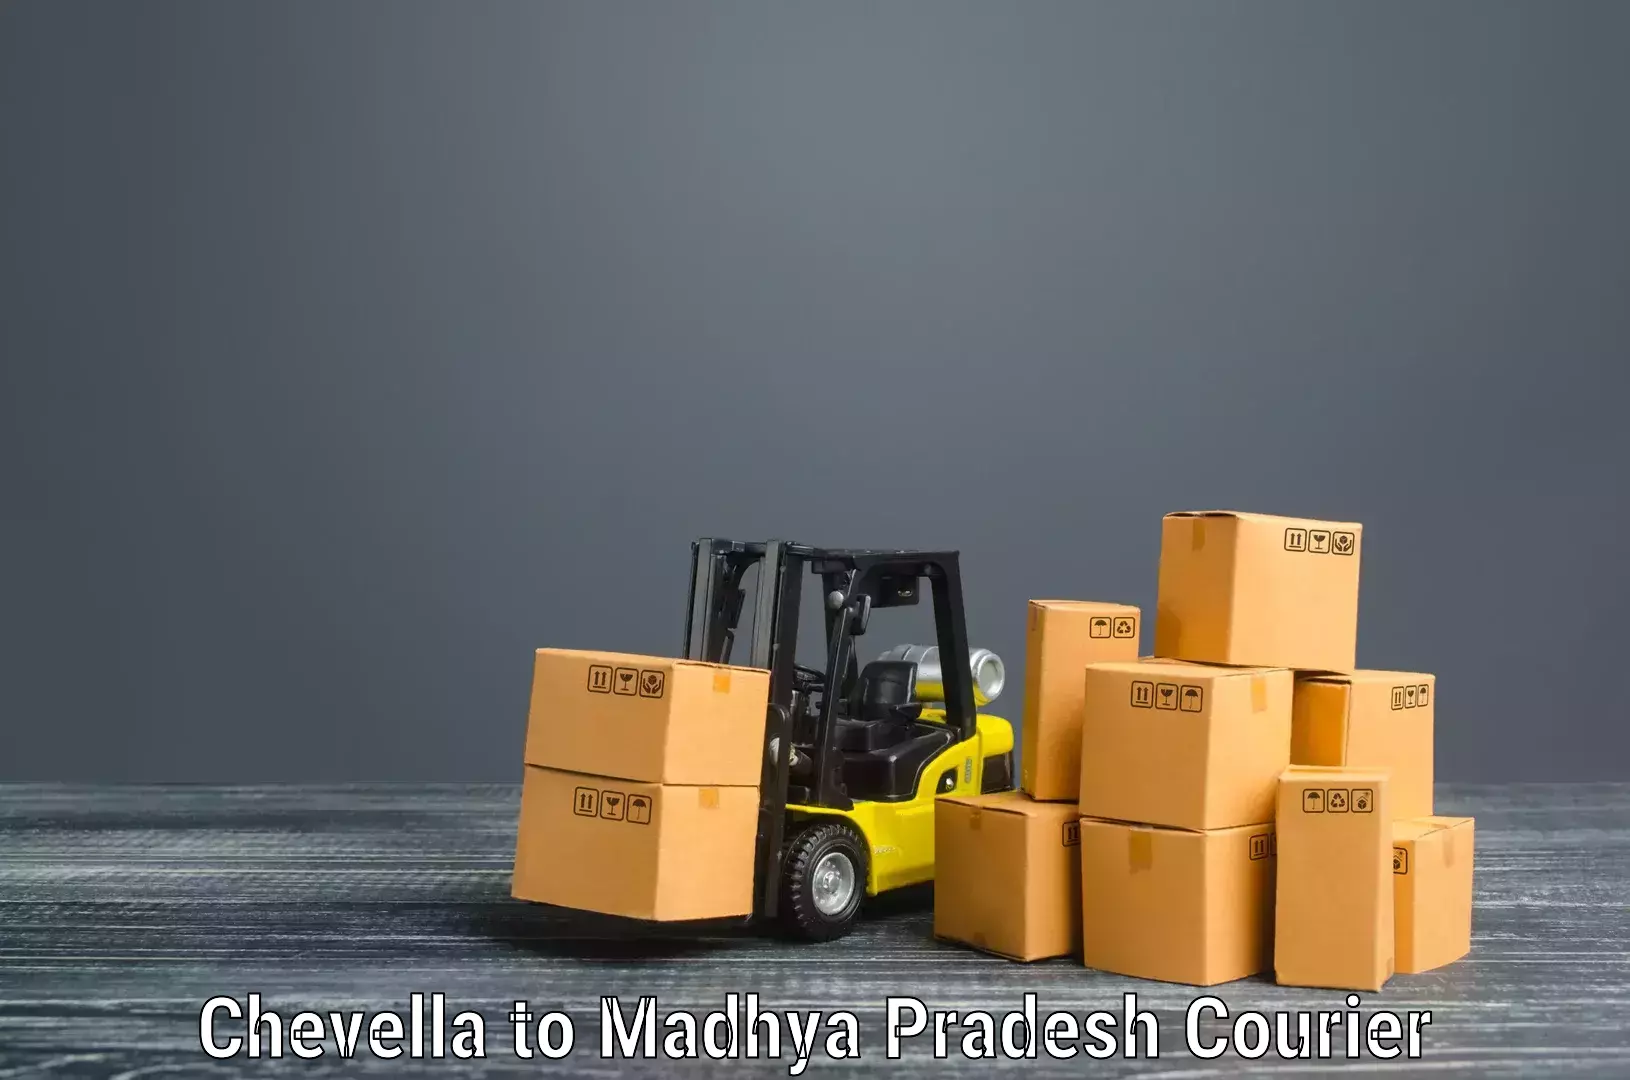 Furniture moving experts Chevella to Madhya Pradesh